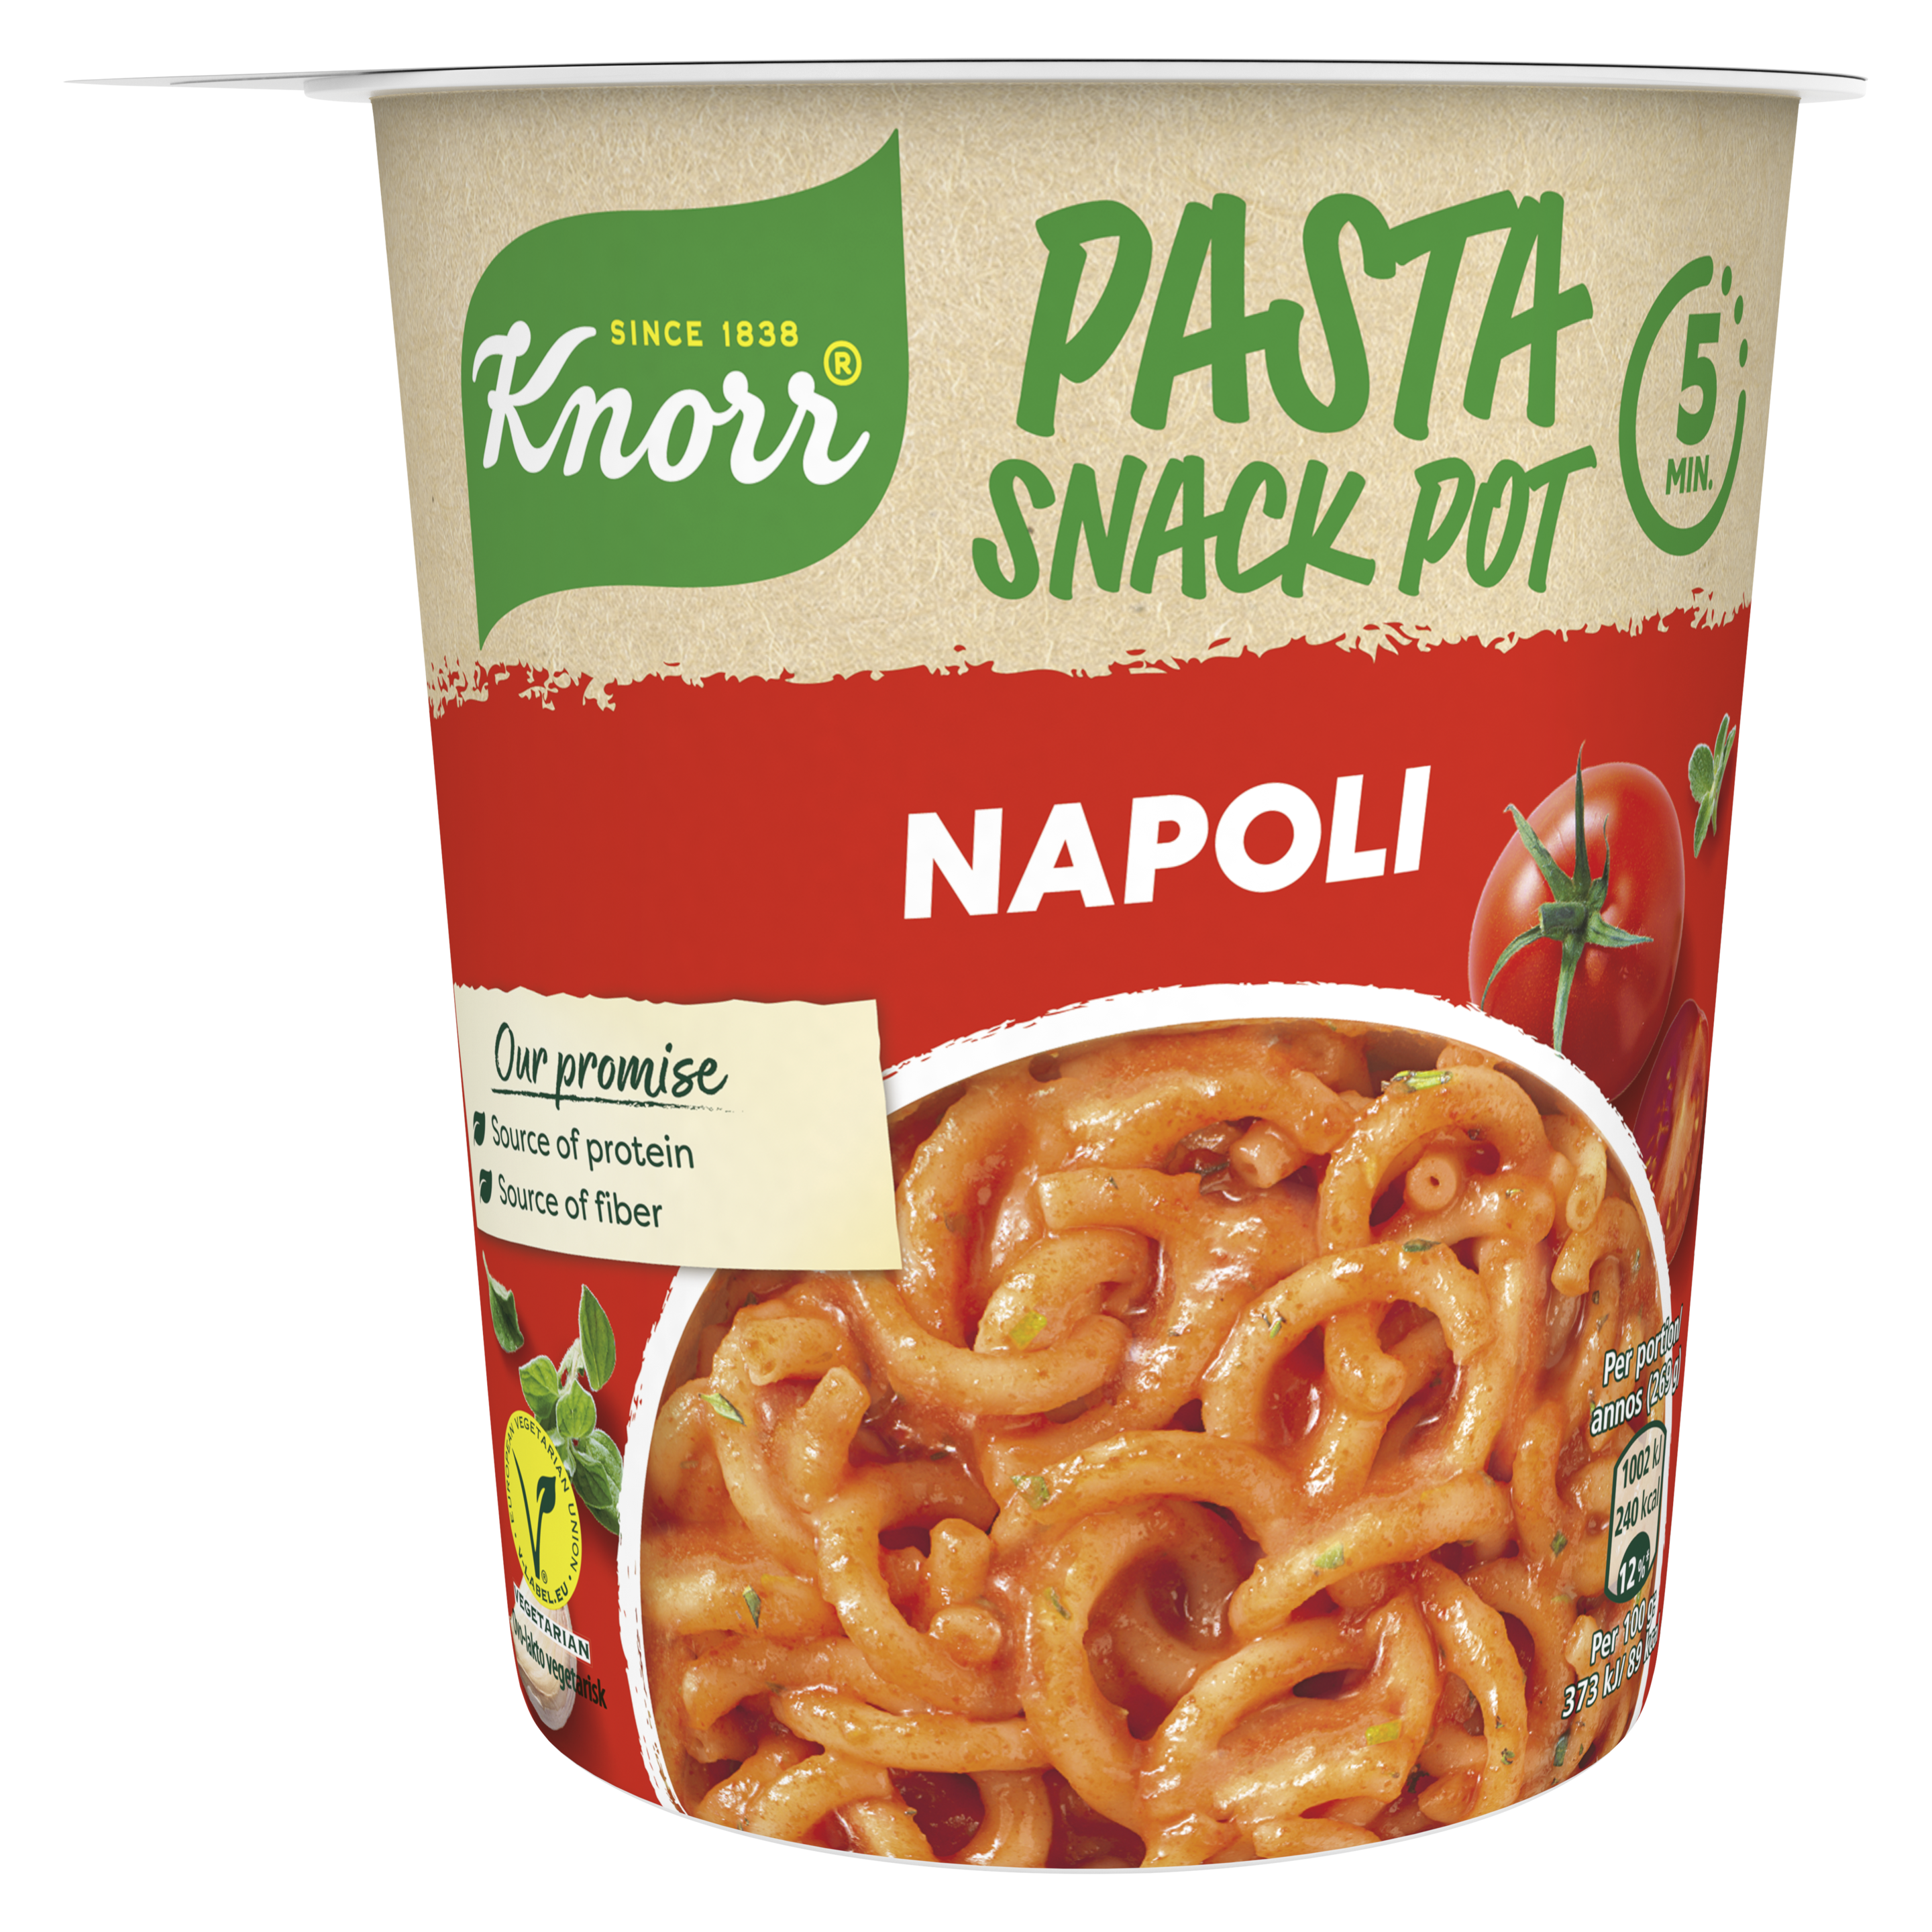 Snack Pot Spaghetti Napoli